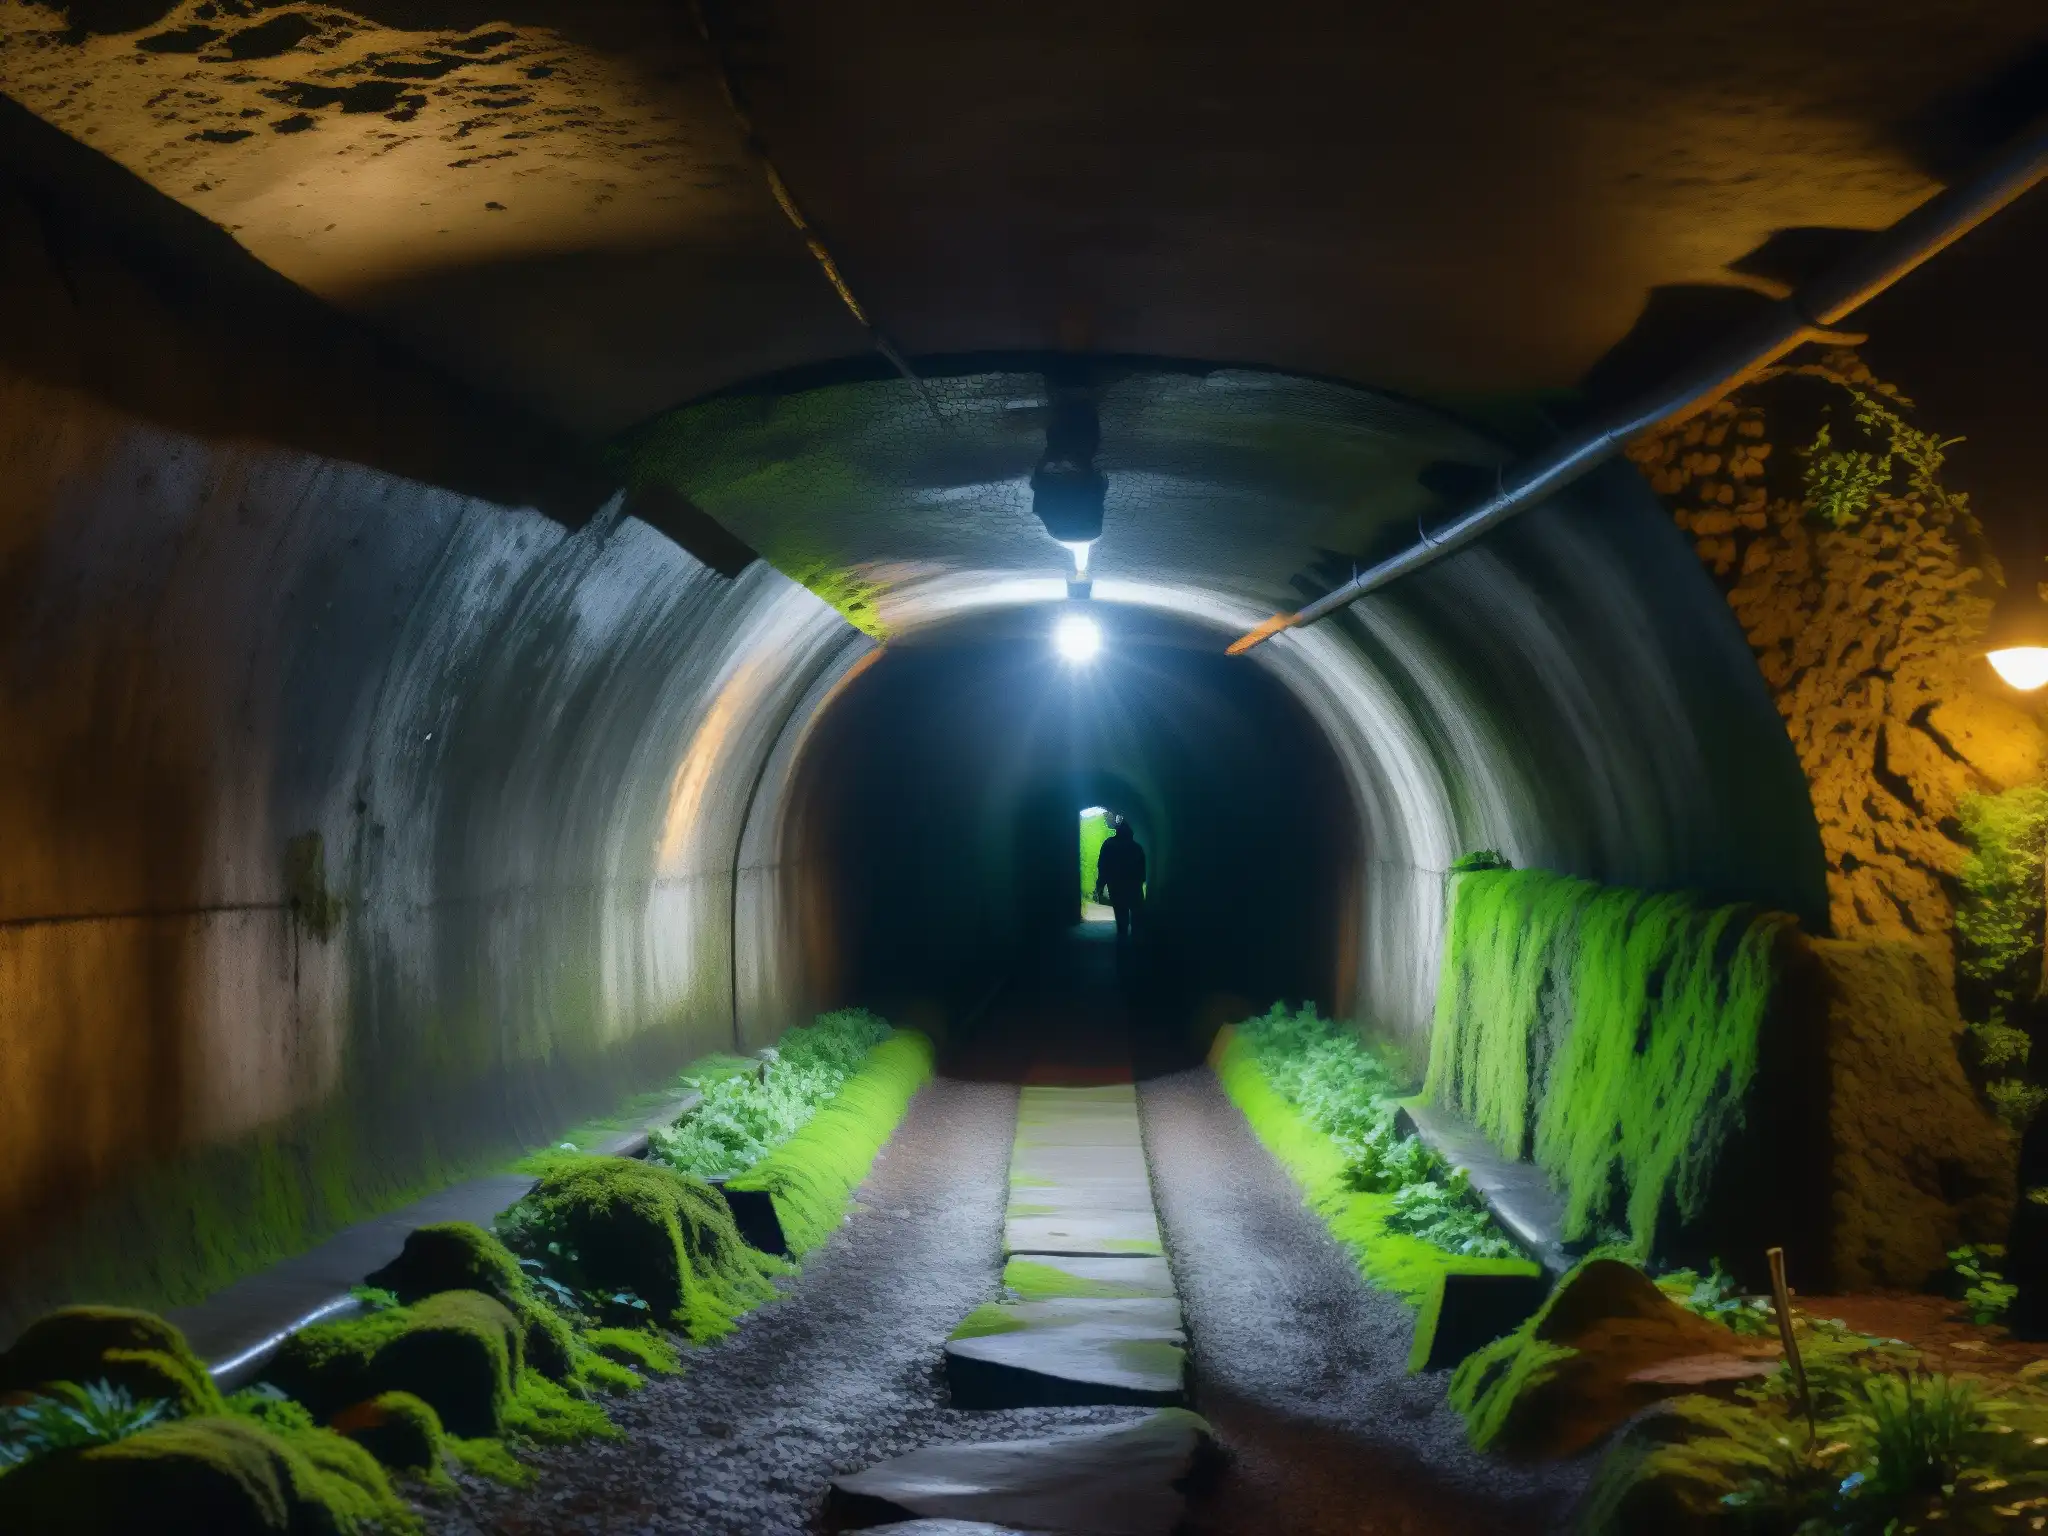 Un túnel subterráneo oscuro con paredes cubiertas de musgo, un estrecho camino que se adentra en la oscuridad y un tenue resplandor desde una apertura distante, revelando la atmósfera misteriosa